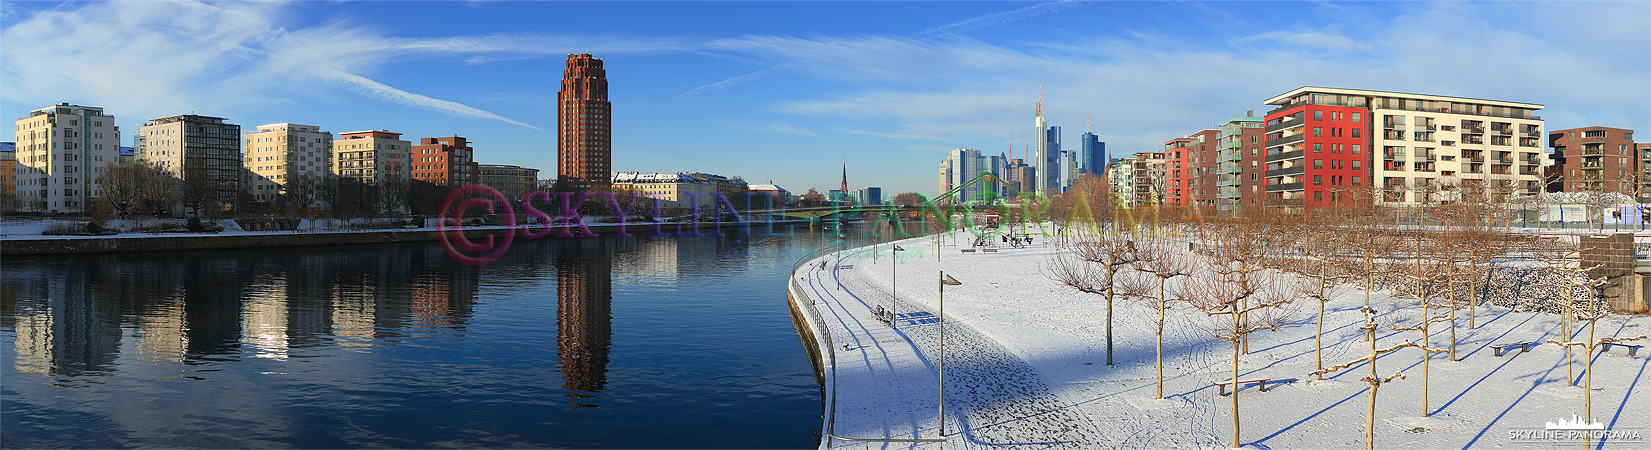 Frankfurt im Schnee (p_00591)